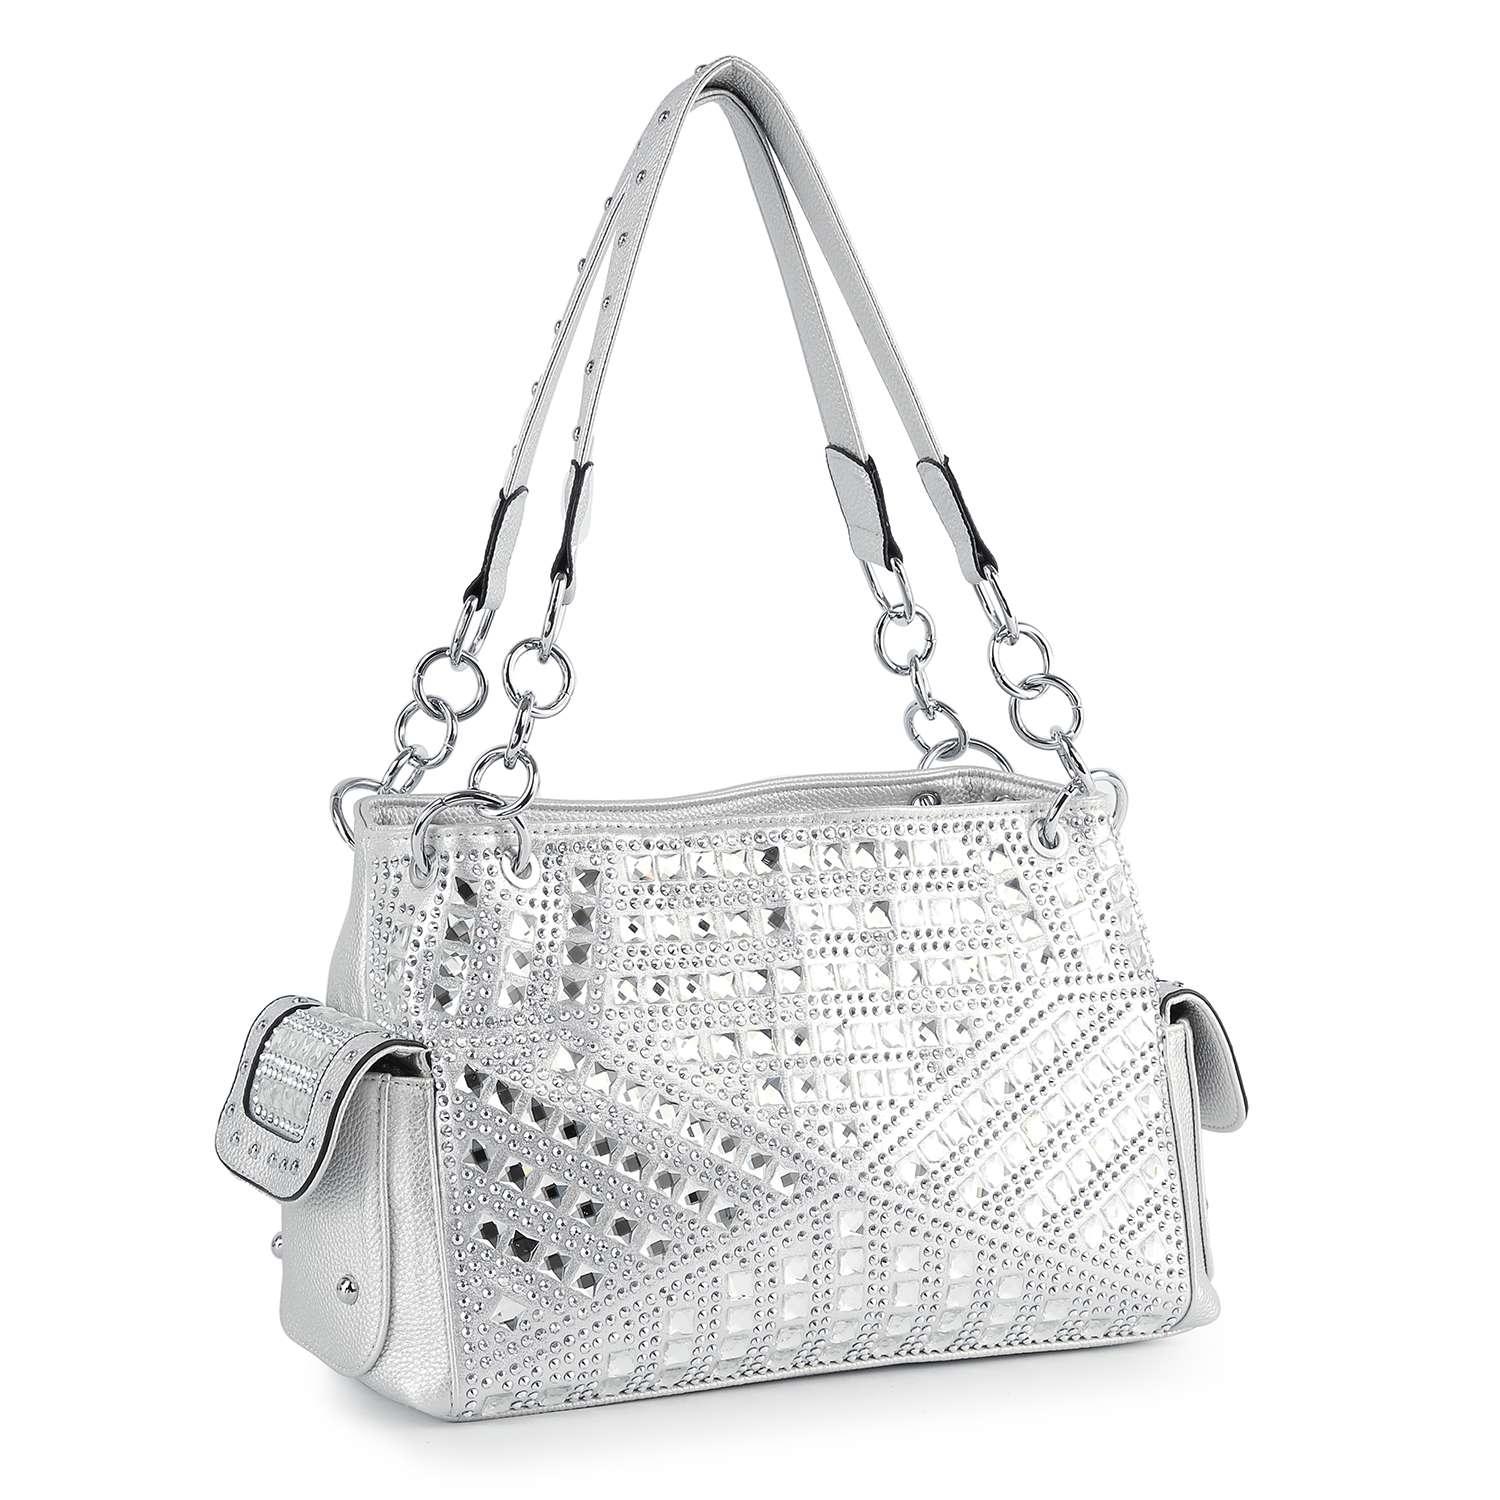 Rhinestone Covered Fashion Handbag - Silver